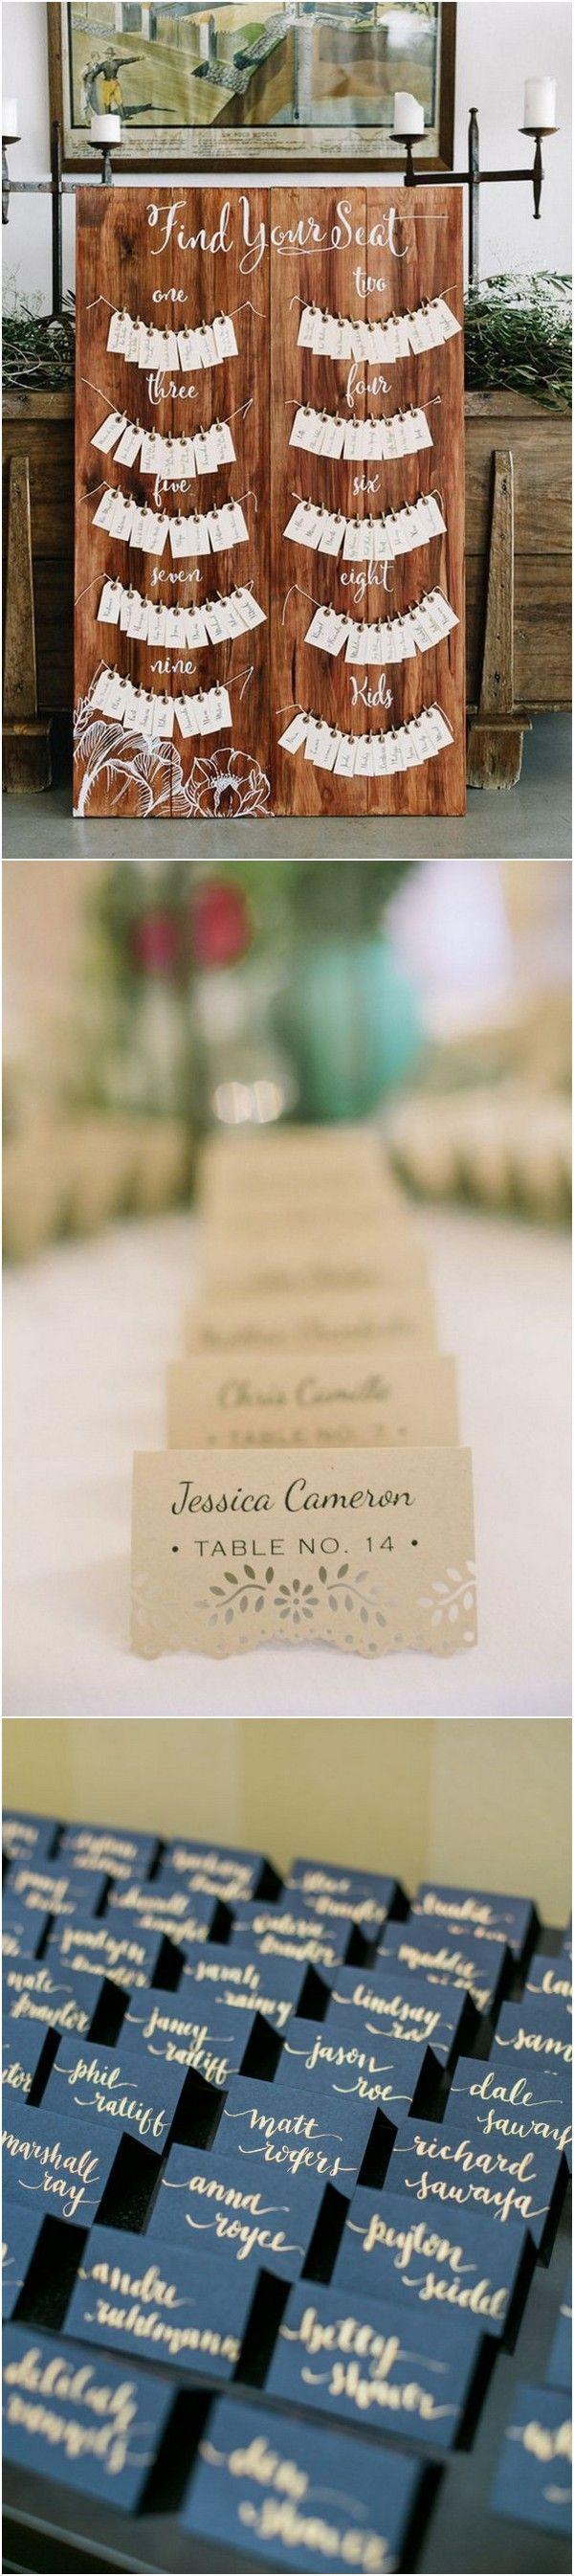 زفاف - 15 Creative Wedding Escort Card Display Ideas To Love - Page 2 Of 2